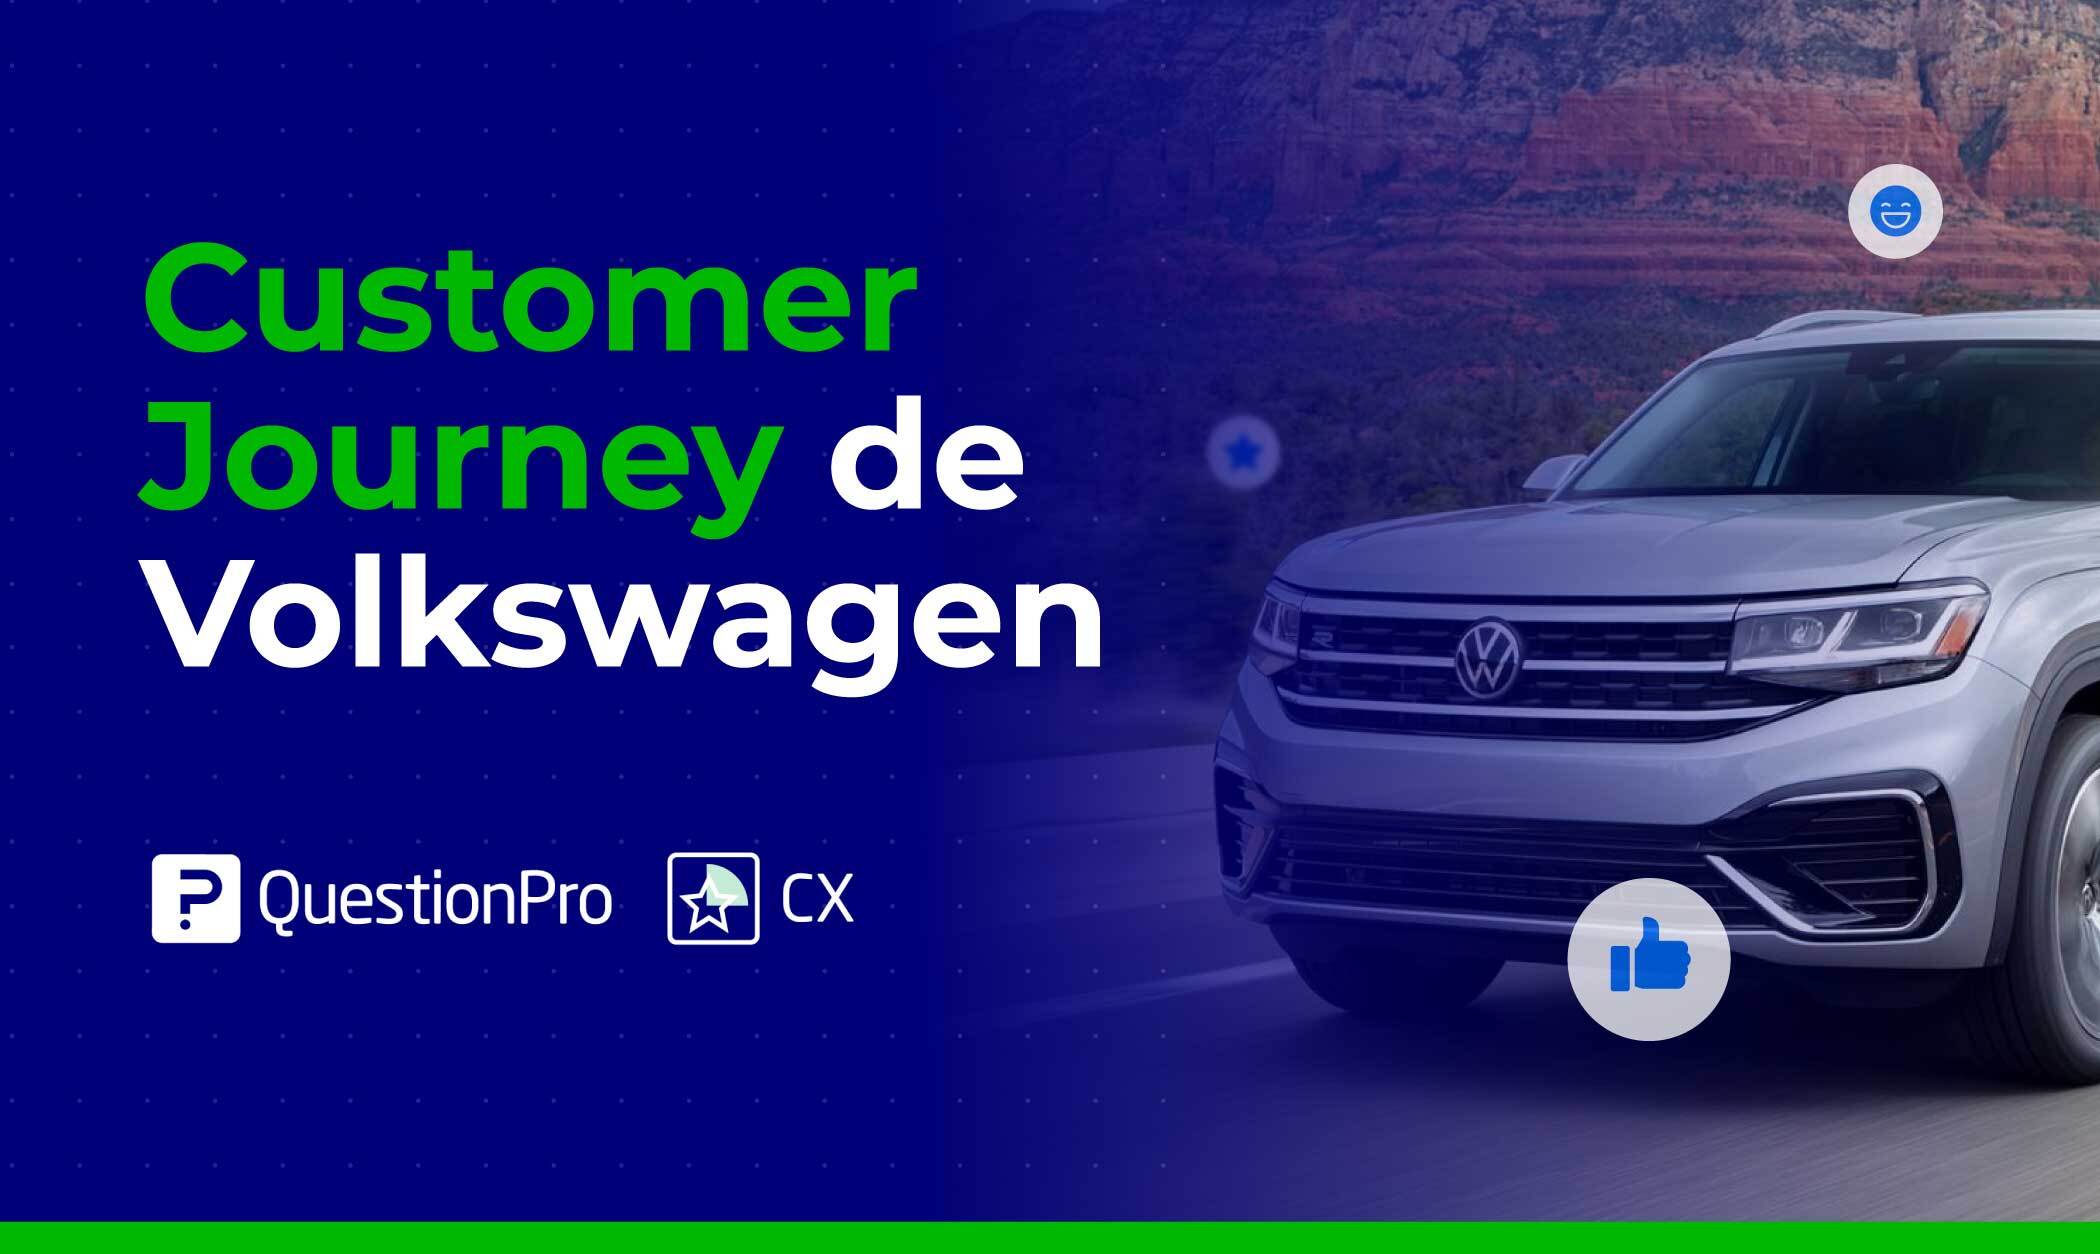 Customer journey de Volkswagen